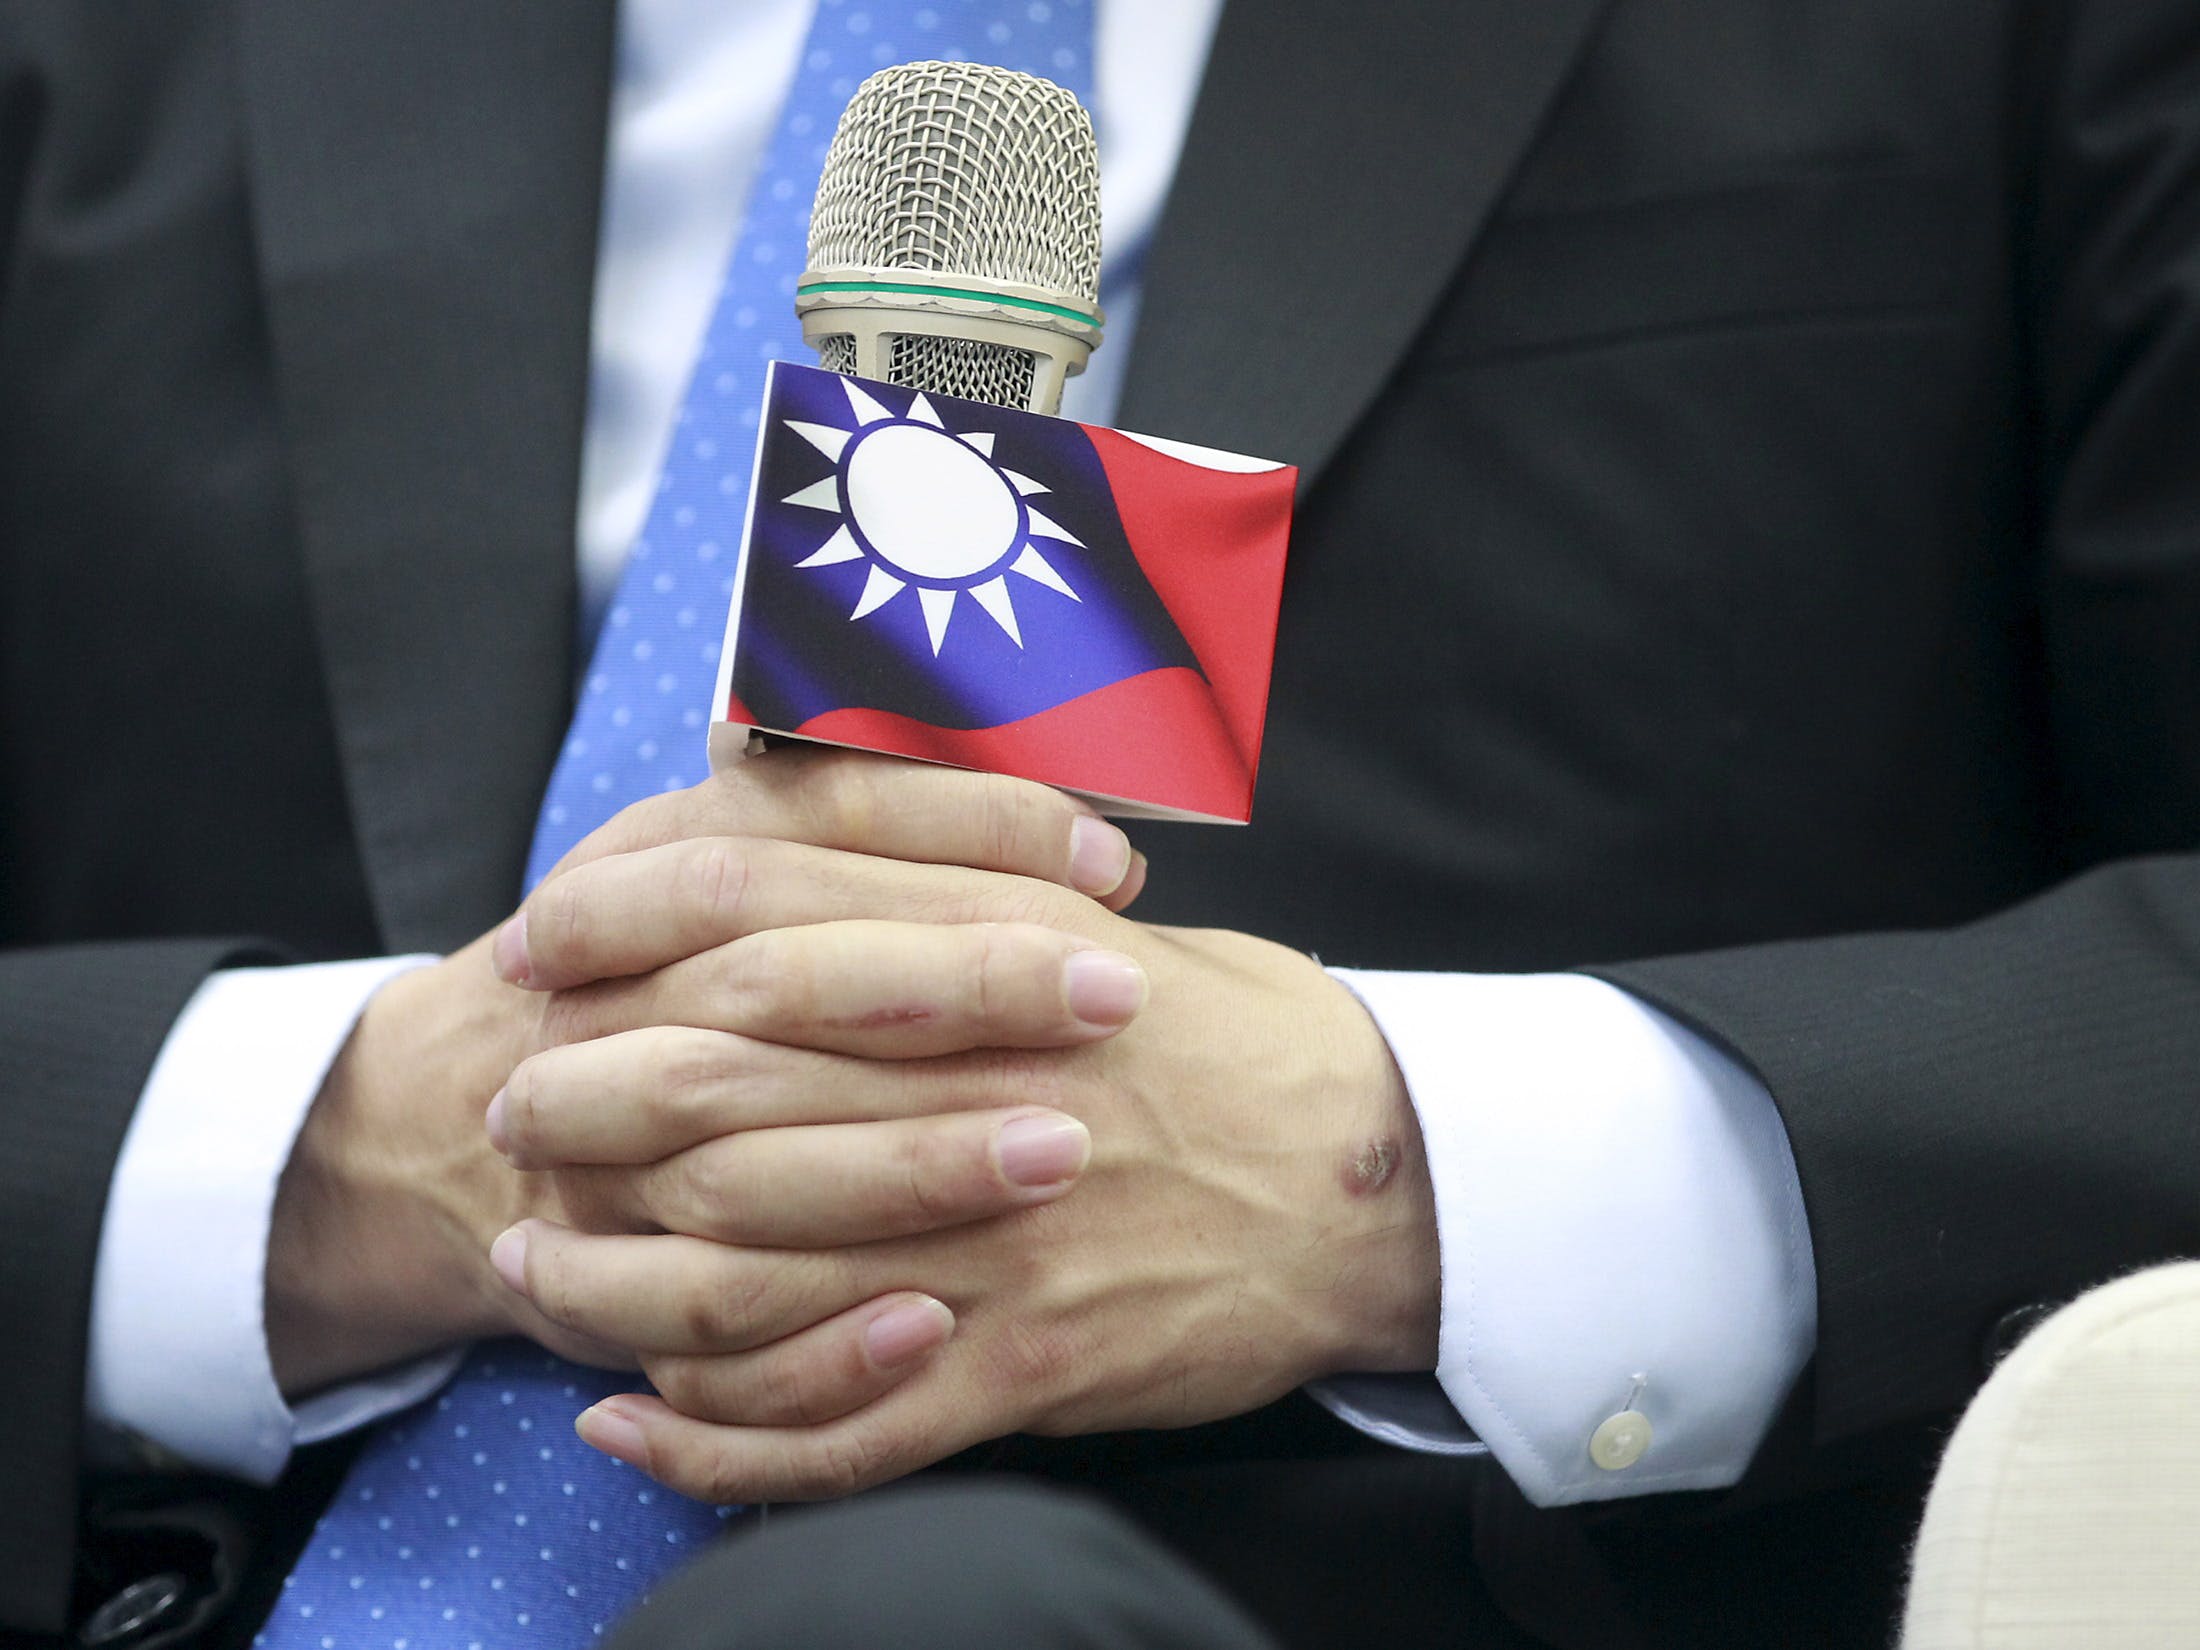 朱立倫 國民黨 中華民國 國旗 Chu, chairman and presidential candidate of Taiwan's ruling Nationalists, attends a news conference at the party headquarters in Taipei